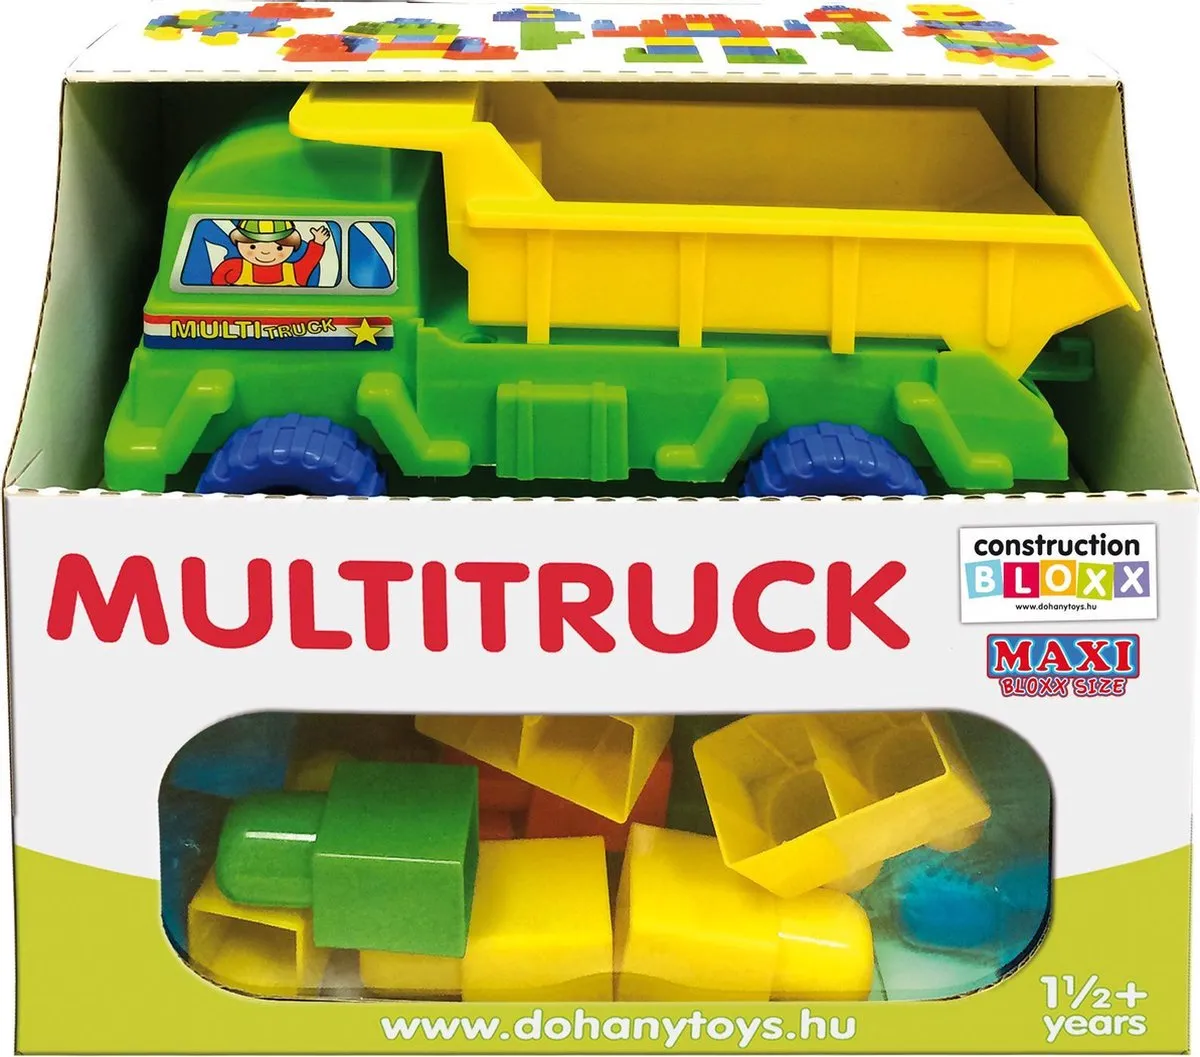 Vrachtauto, Kiepauto met blokken speelgoed